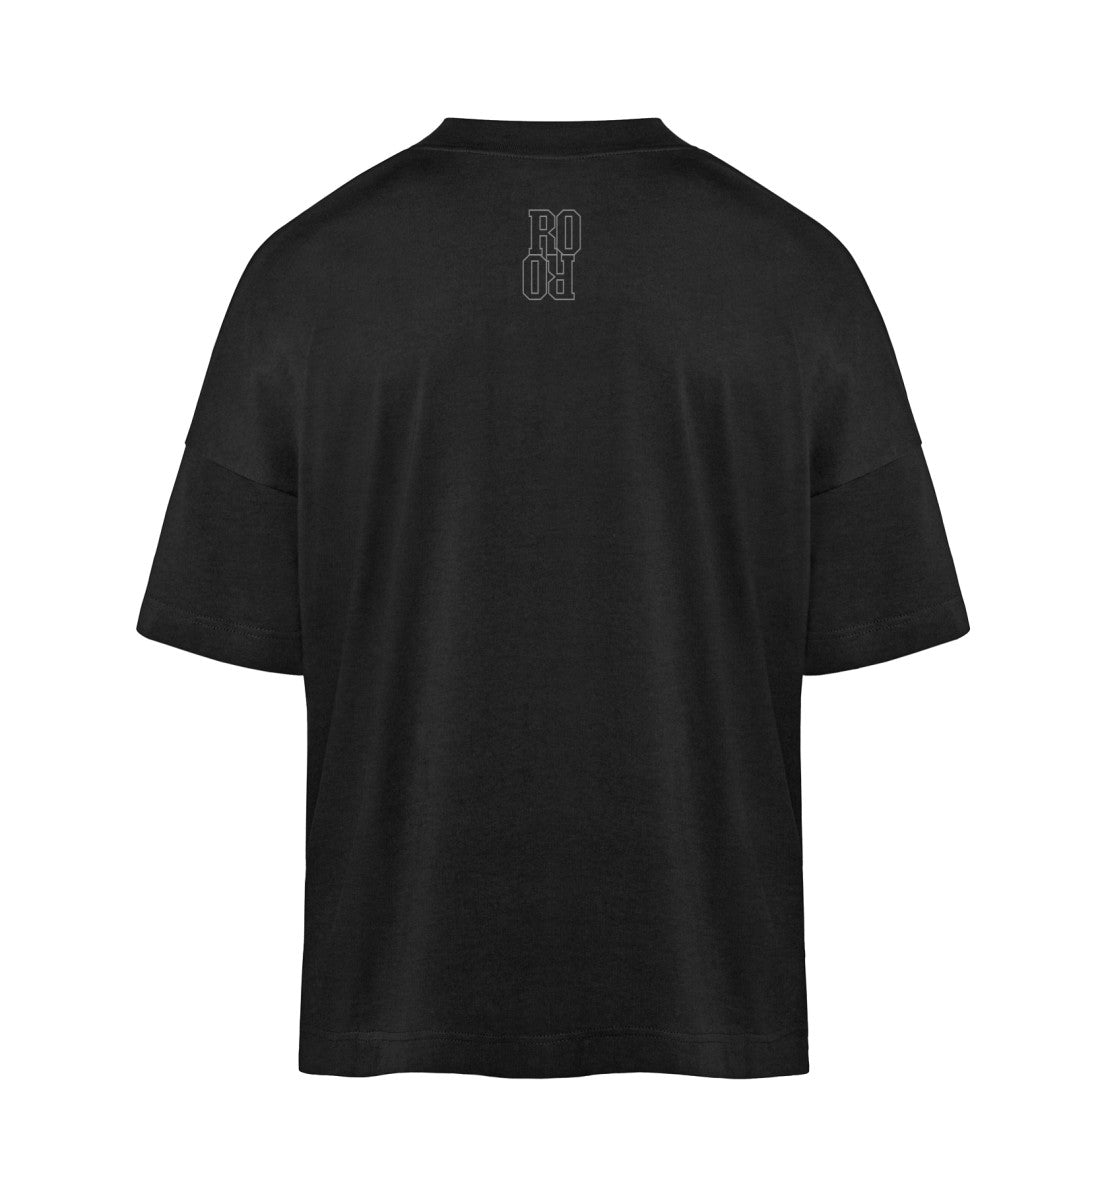 Schwarzes T-Shirt Unisex Oversize Fit für Frauen und Männer bedruckt mit dem Design der Roger Rockawoo Kollektion Minimalism